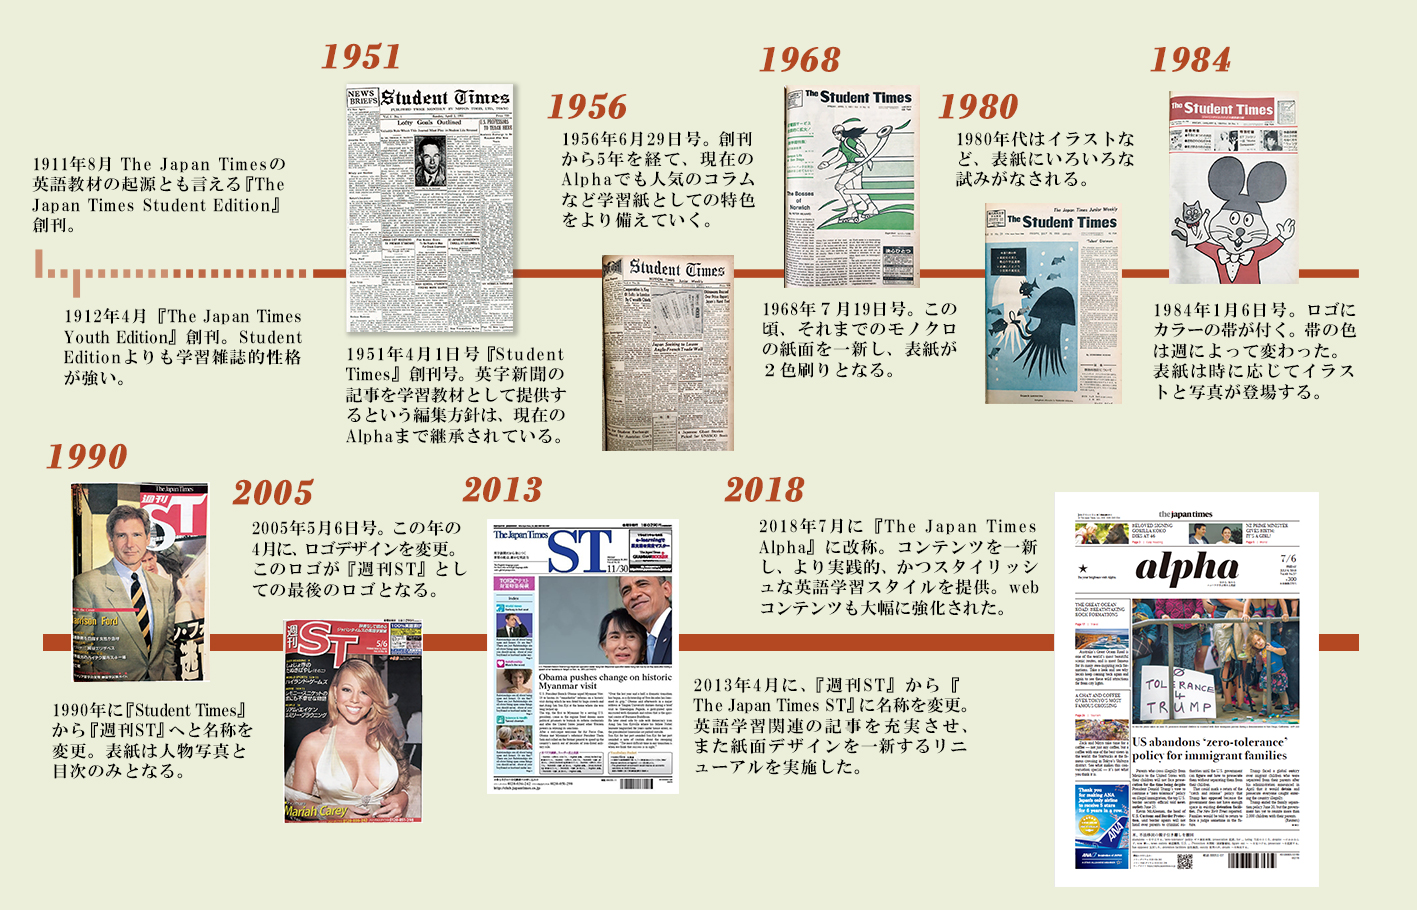 2ヵ月無料 The Japan Times Alpha 70周年直前特別 キャンペーン